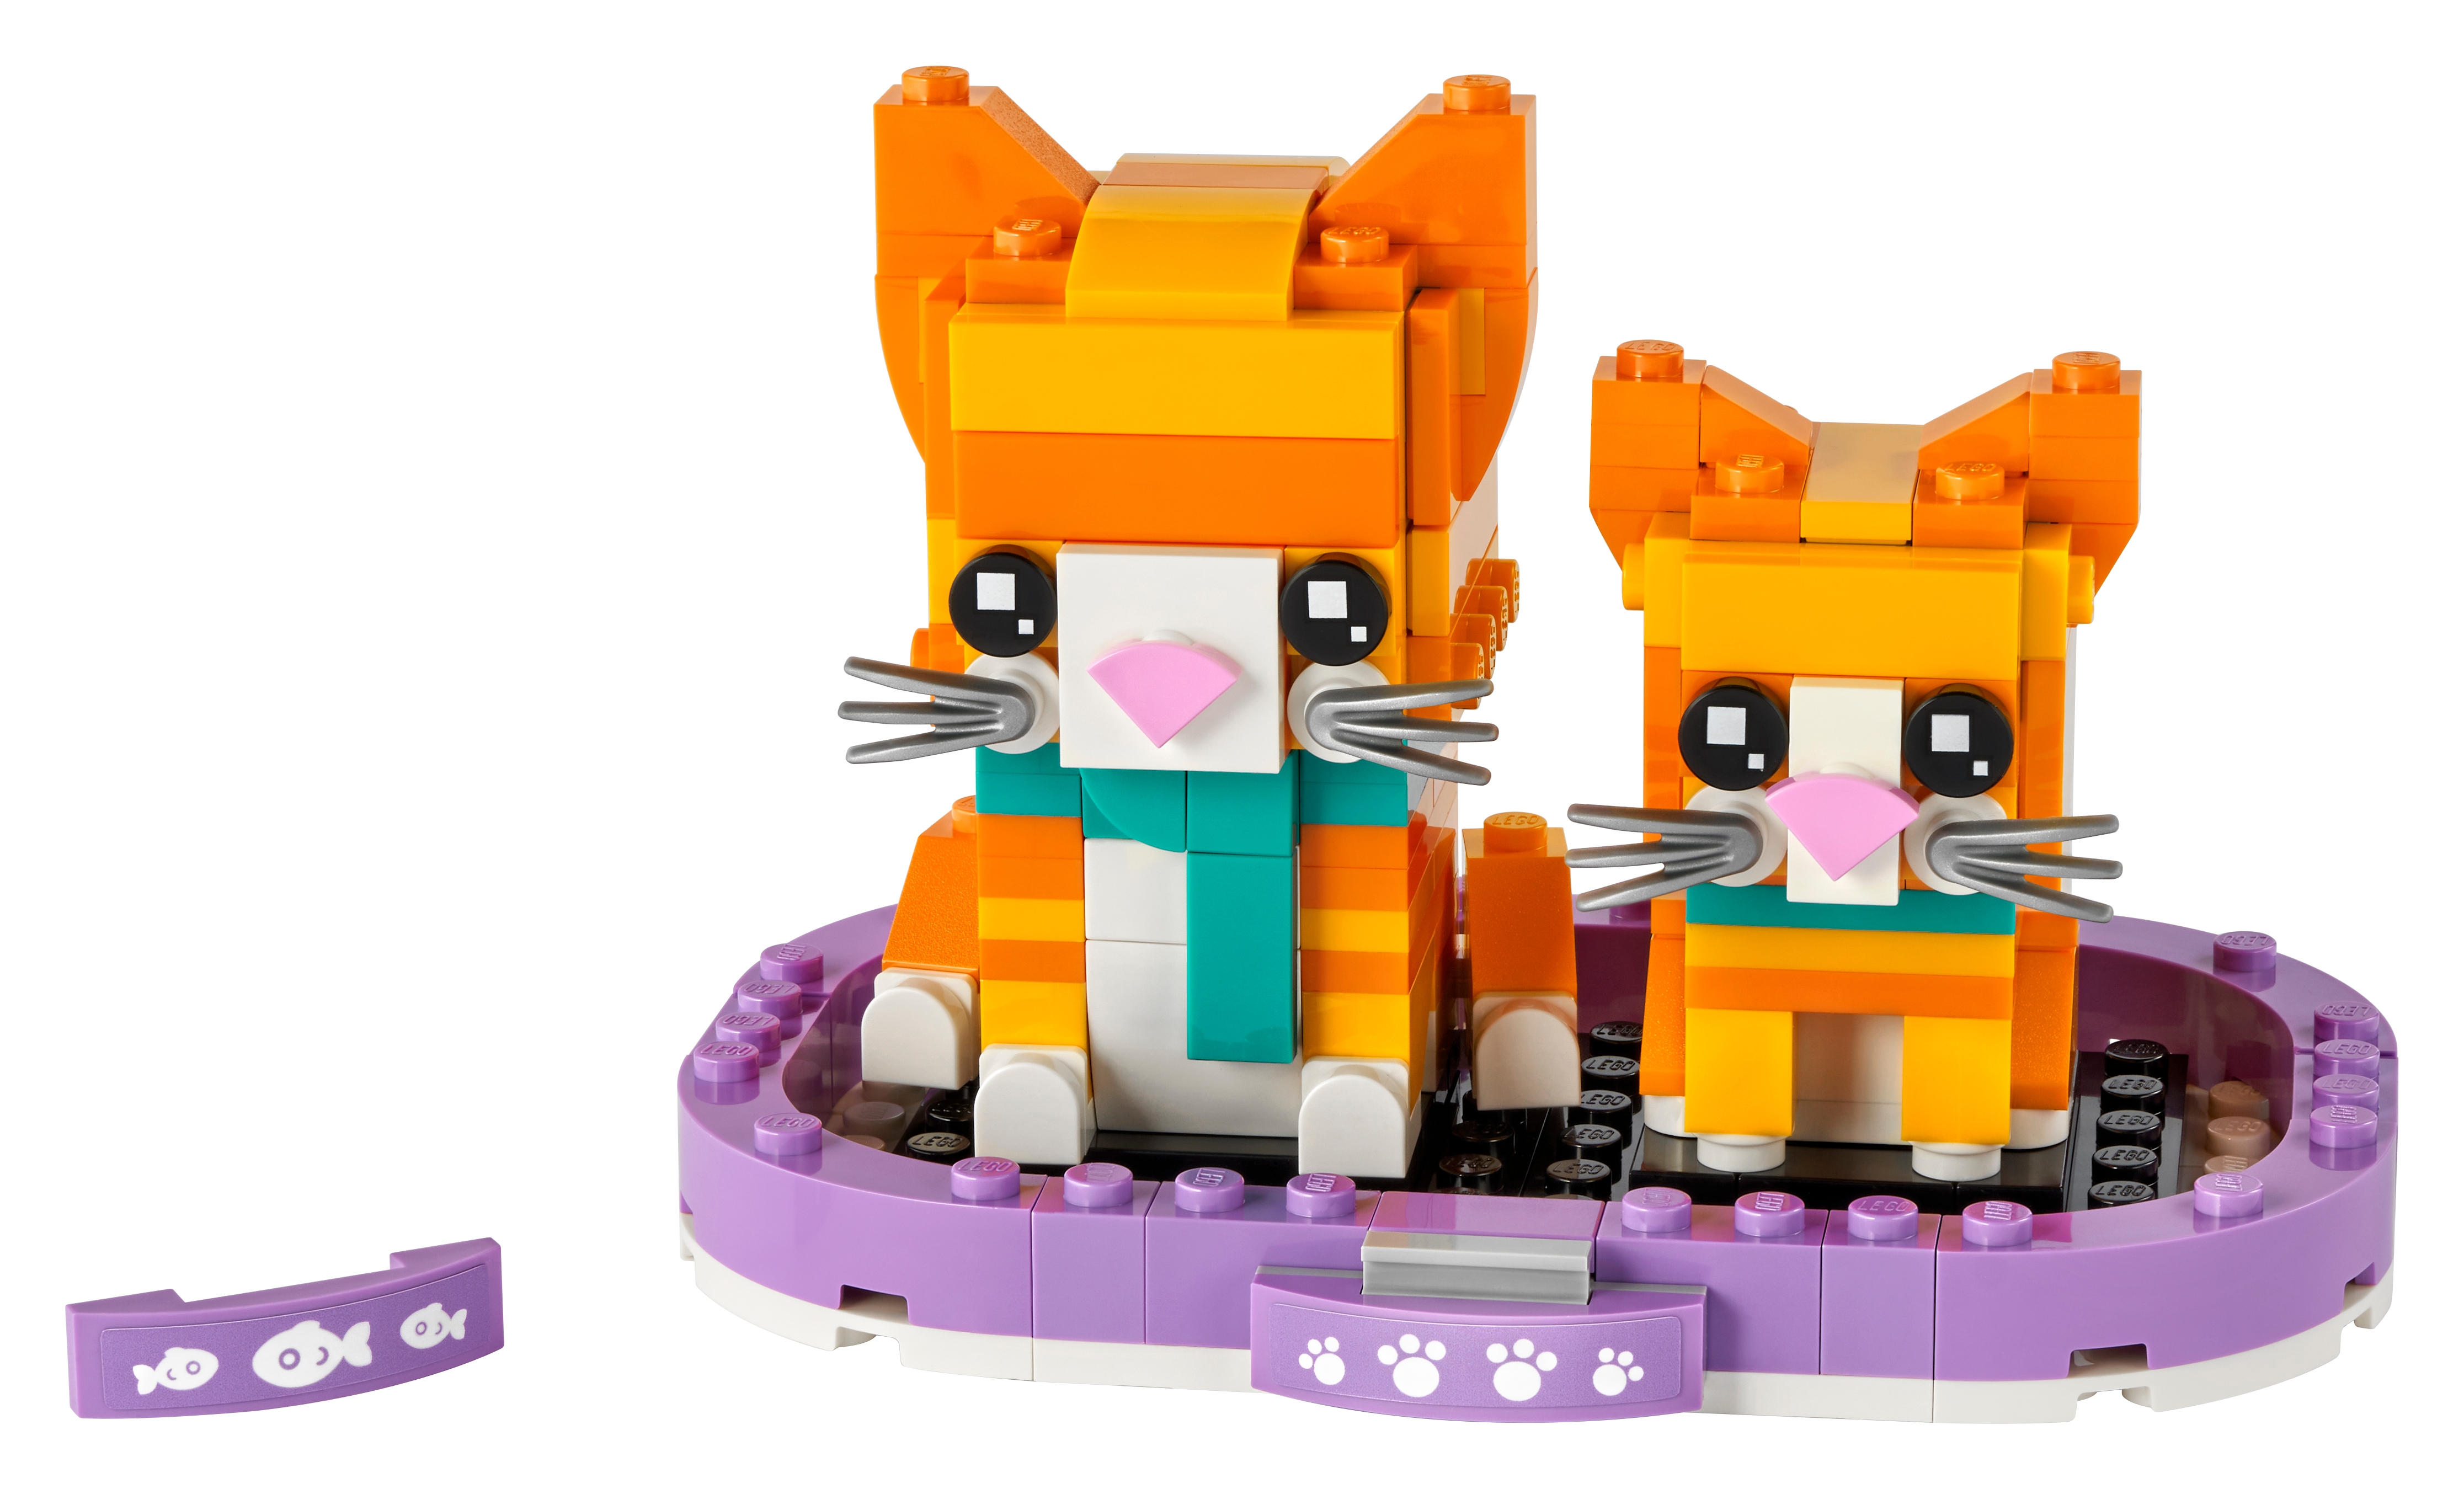 LEGO BrickHeadz 40480 - Pręgowany rudy kot